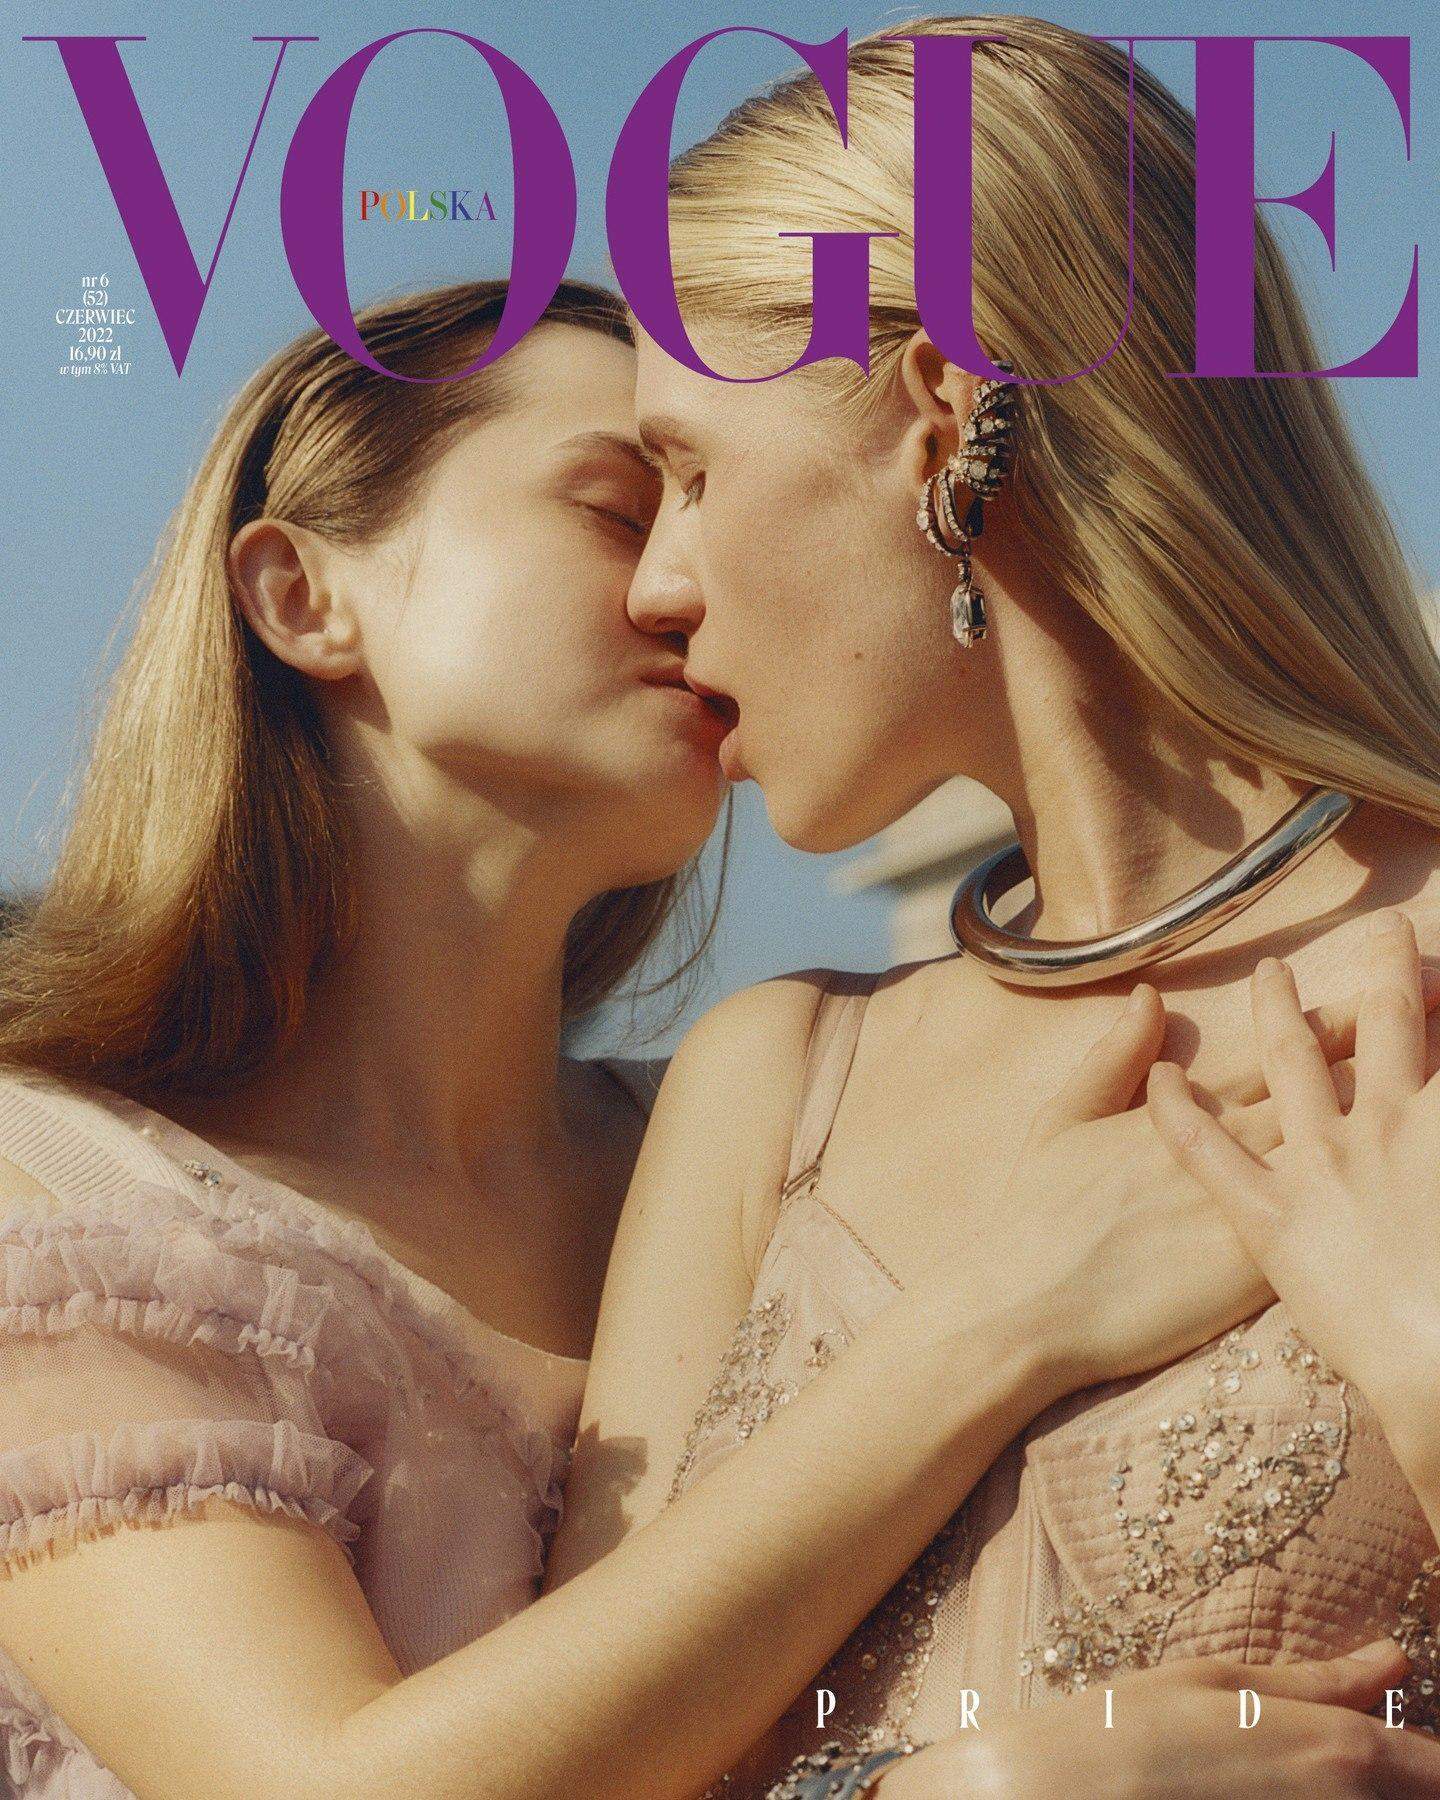 Vogue випустив обкладинки з представниками ЛГБТ 